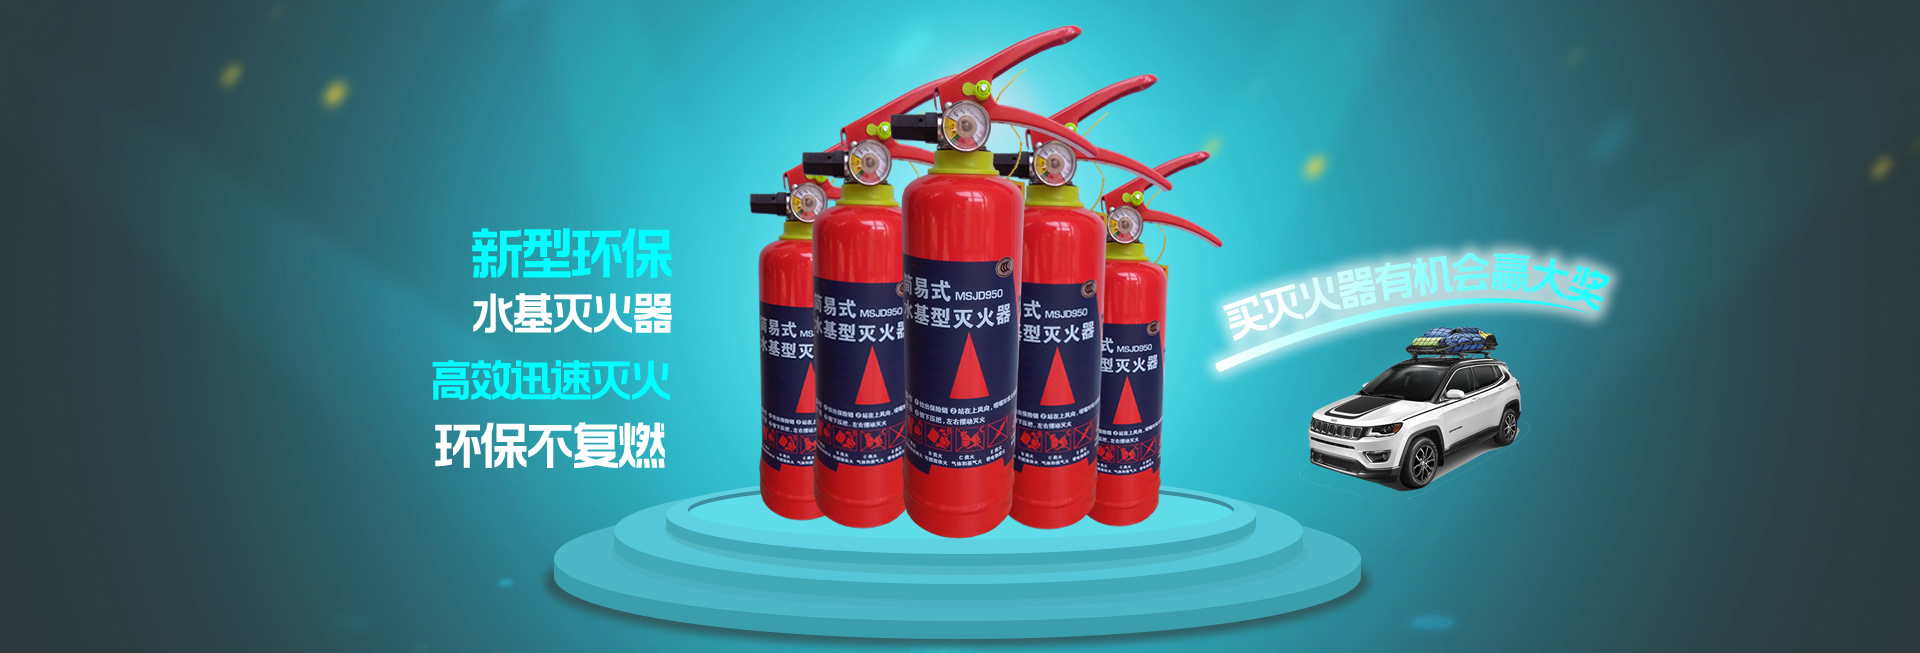 镒安消防投掷型灭火瓶600ml 简单一扔瞬间灭火